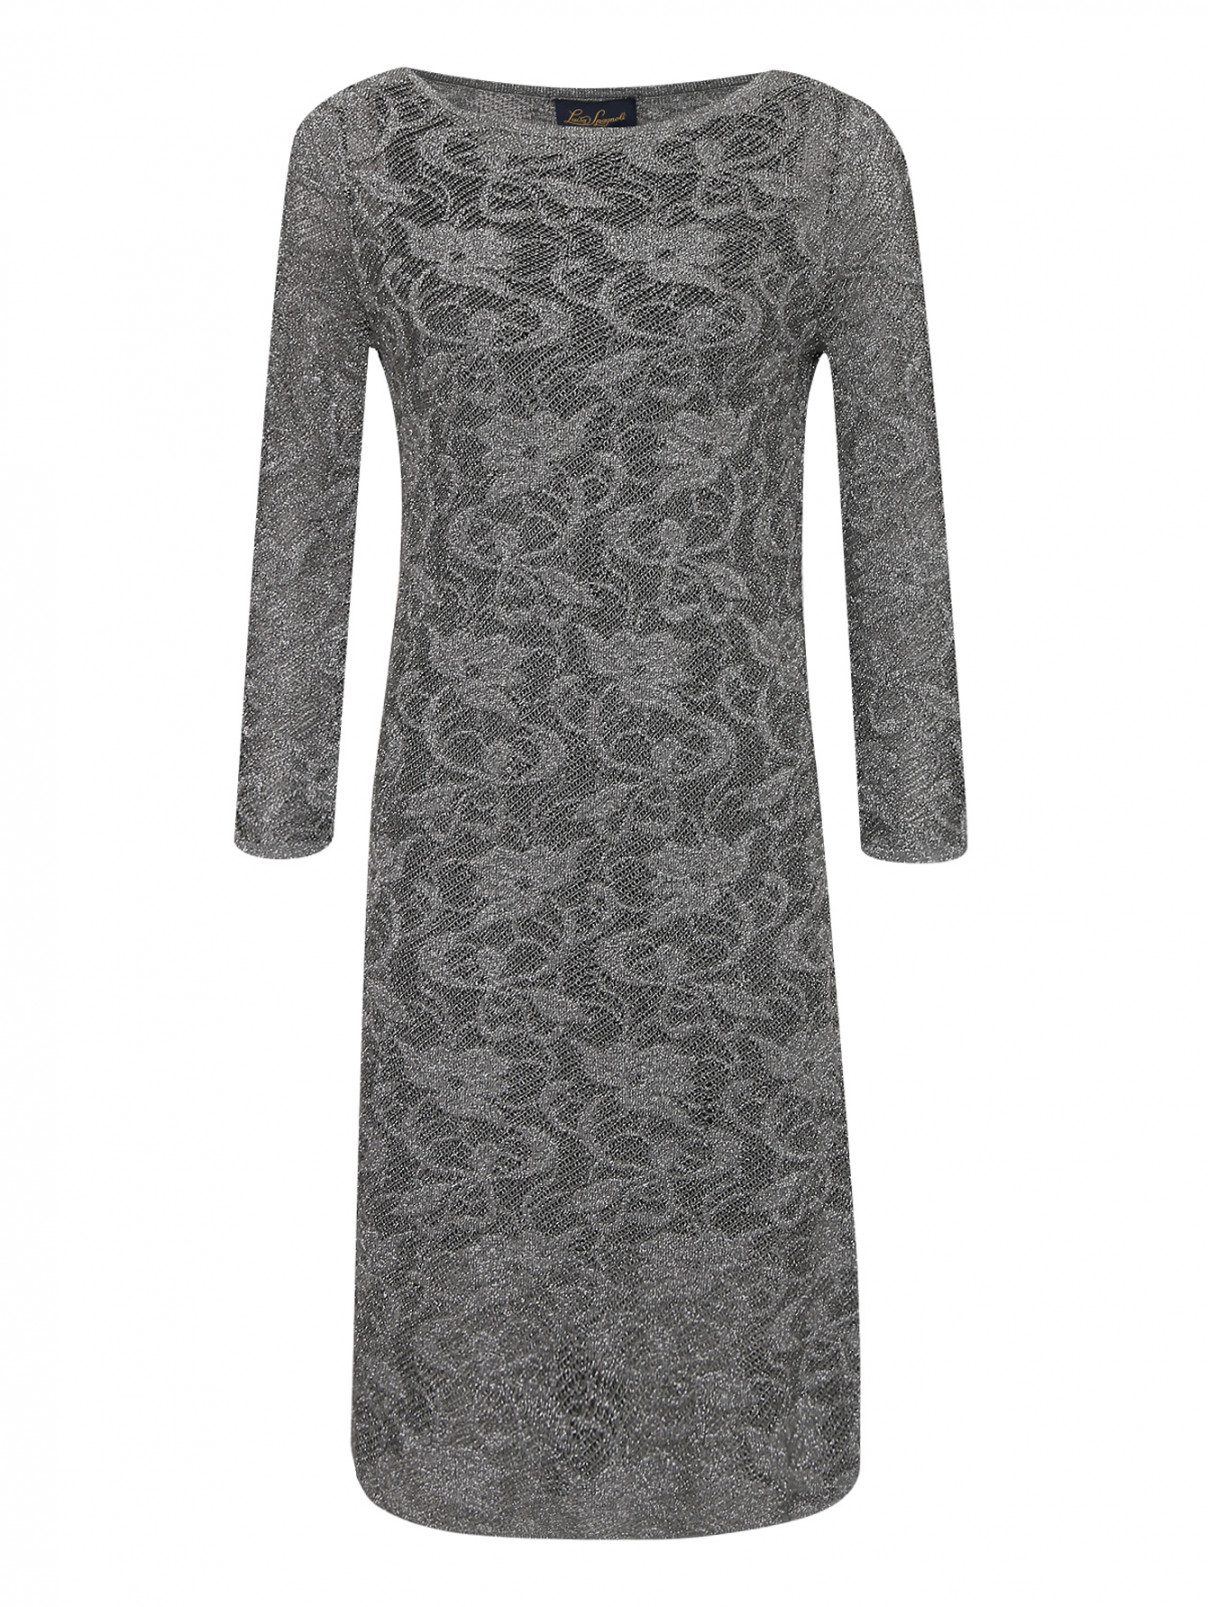 Трикотажное платье ажурной вязки Luisa Spagnoli  –  Общий вид  – Цвет:  Серый